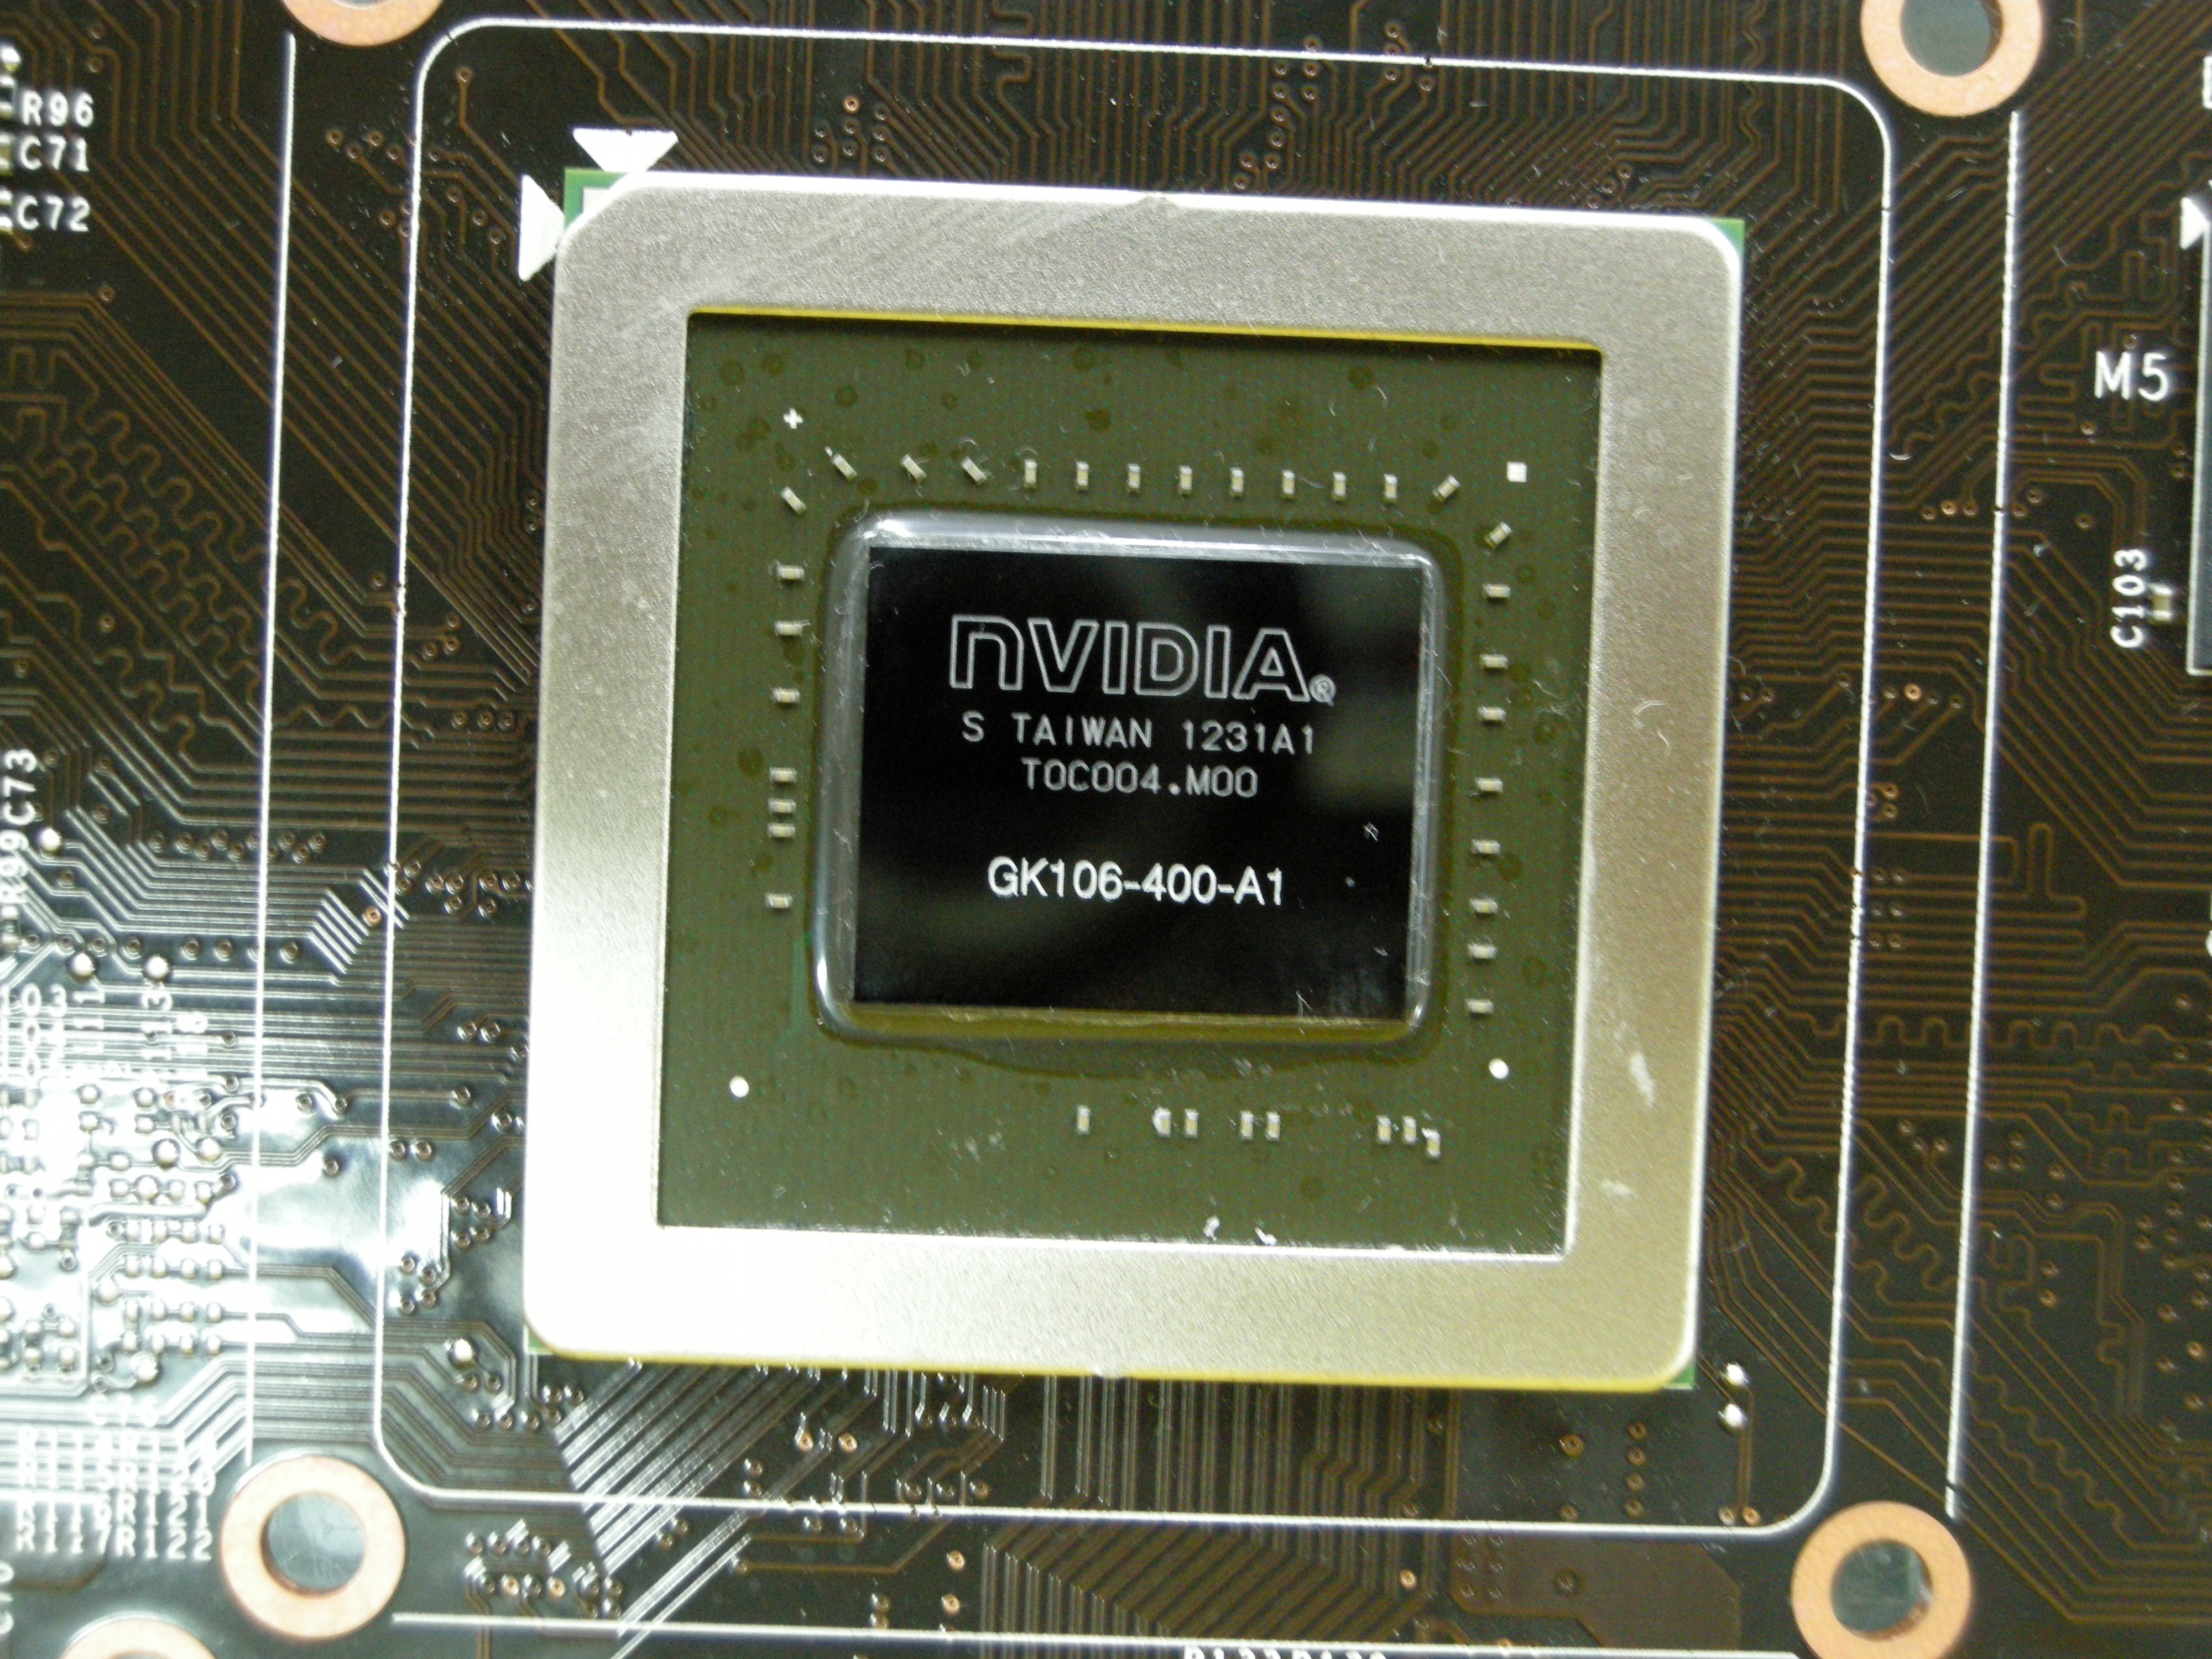 6608GK106.JPG - 3.82 MB